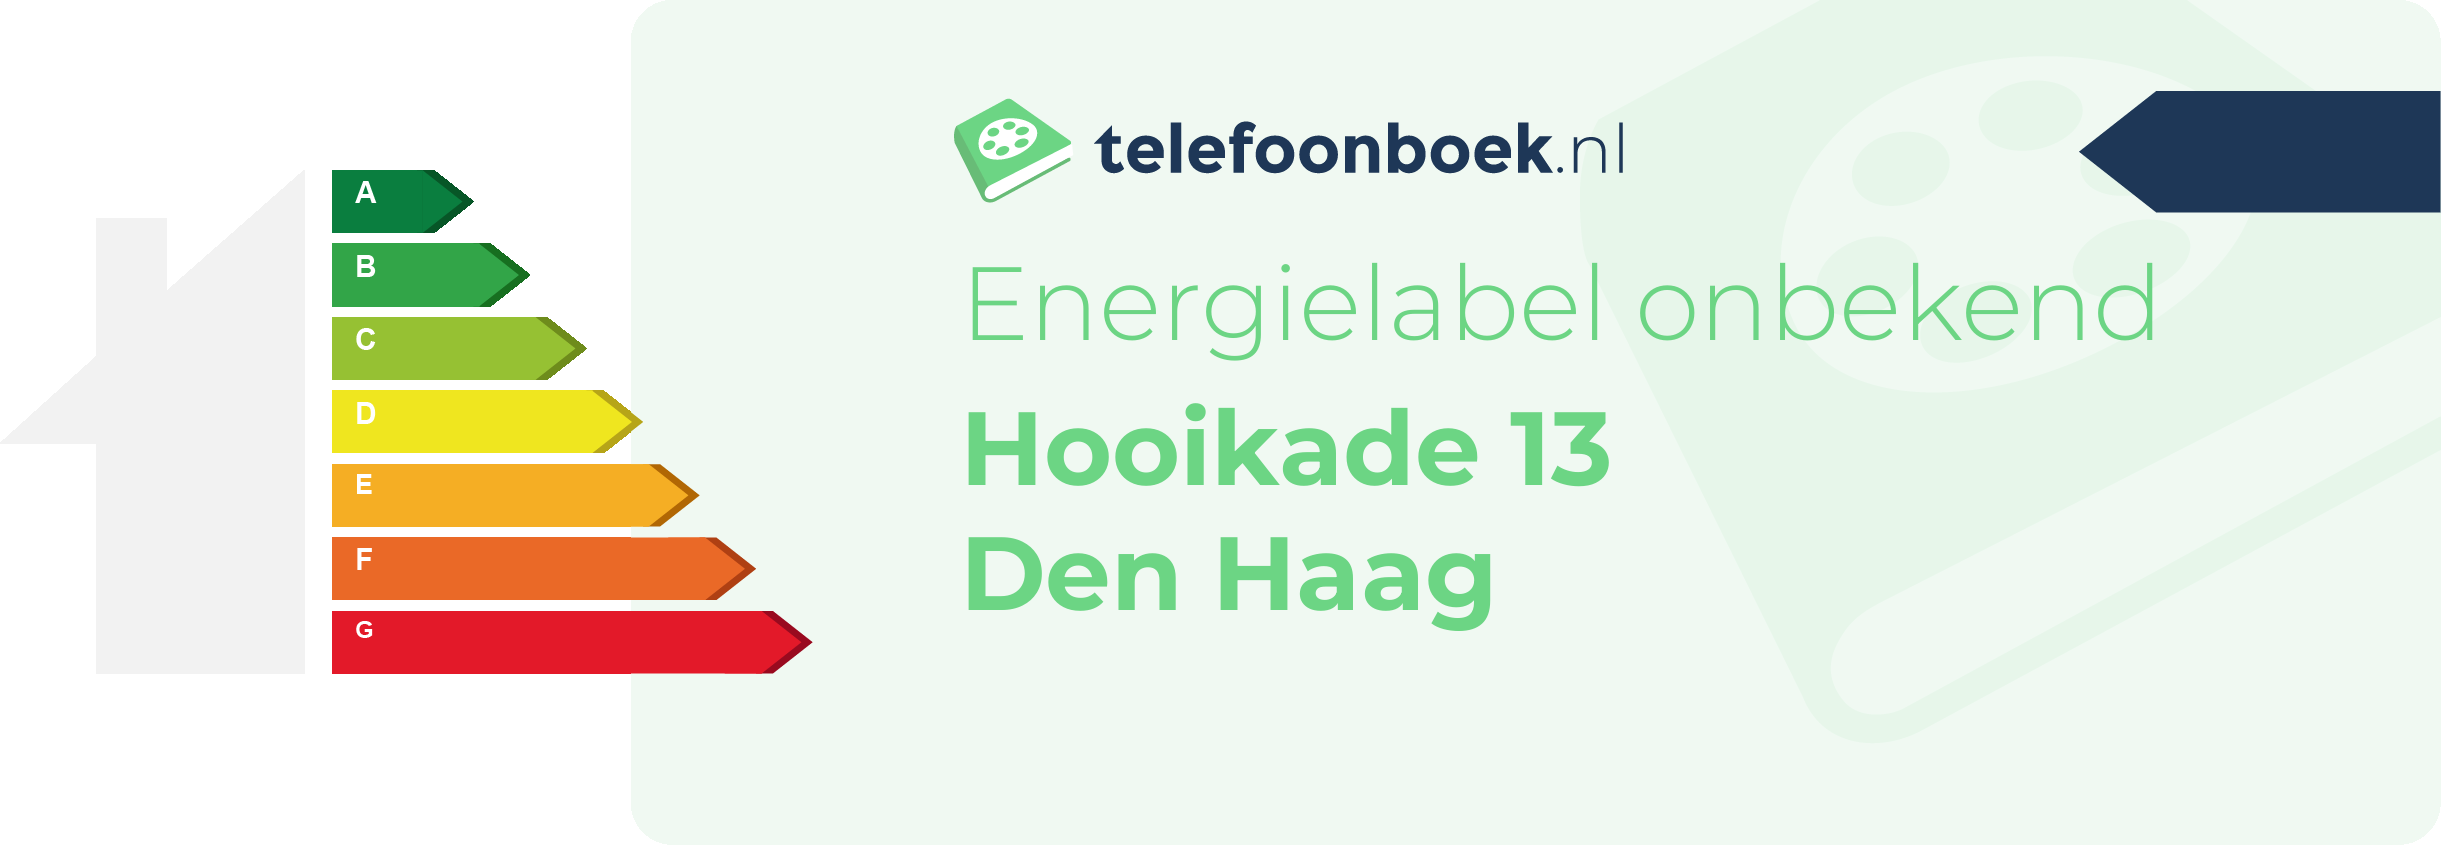 Energielabel Hooikade 13 Den Haag